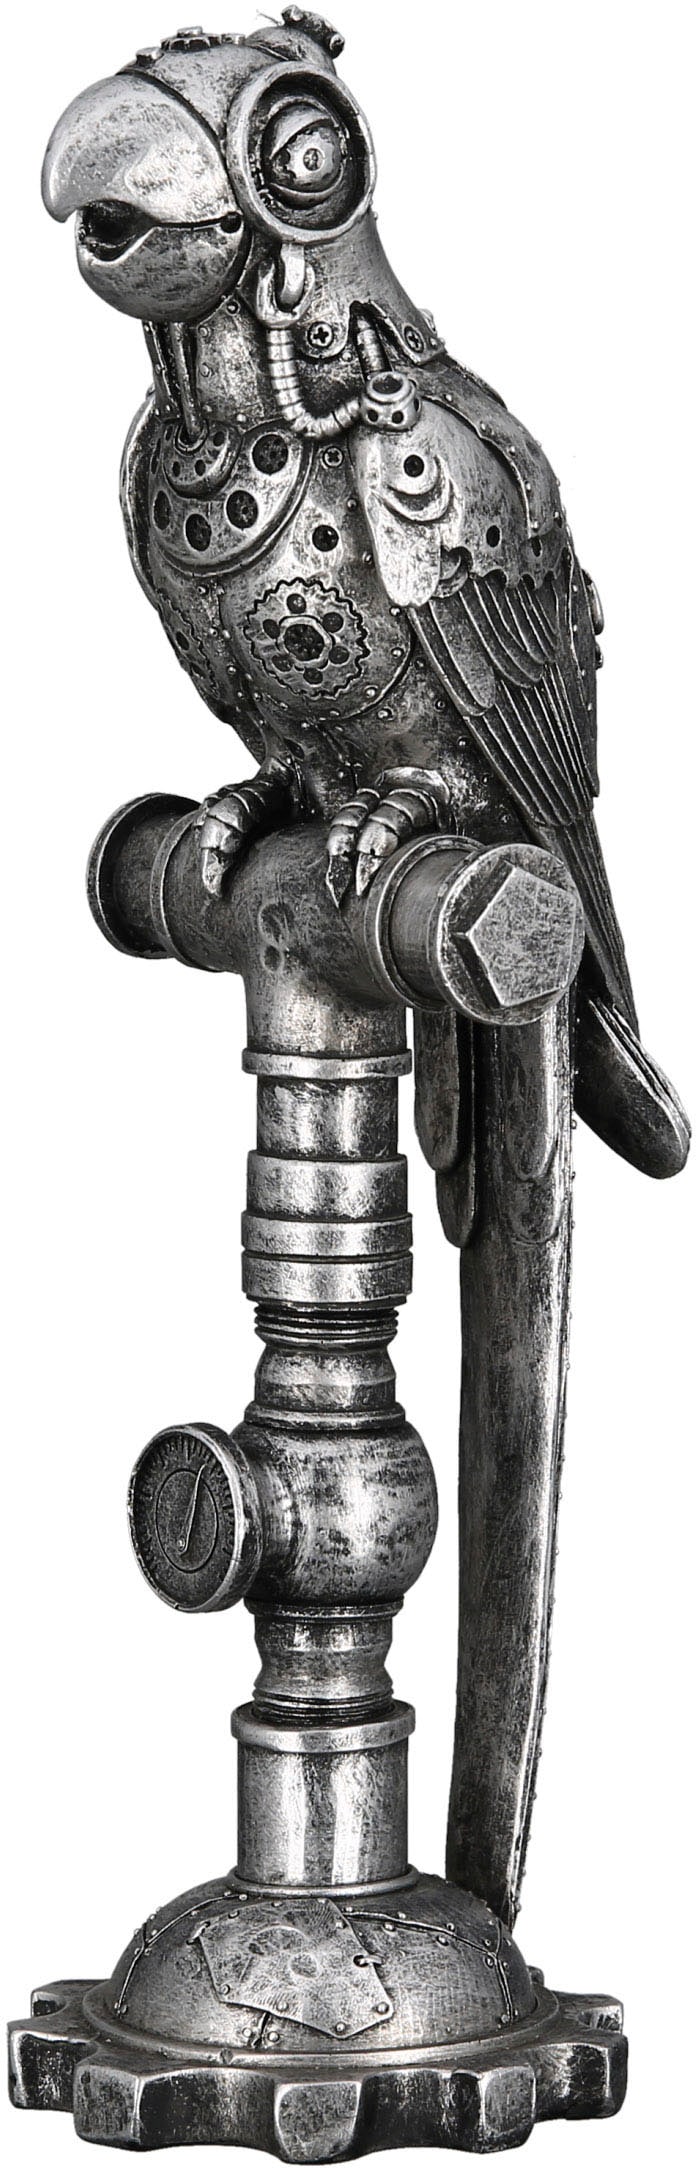 »Skulptur auf Parrot Rechnung kaufen by Tierfigur Steampunk« Casablanca Gilde